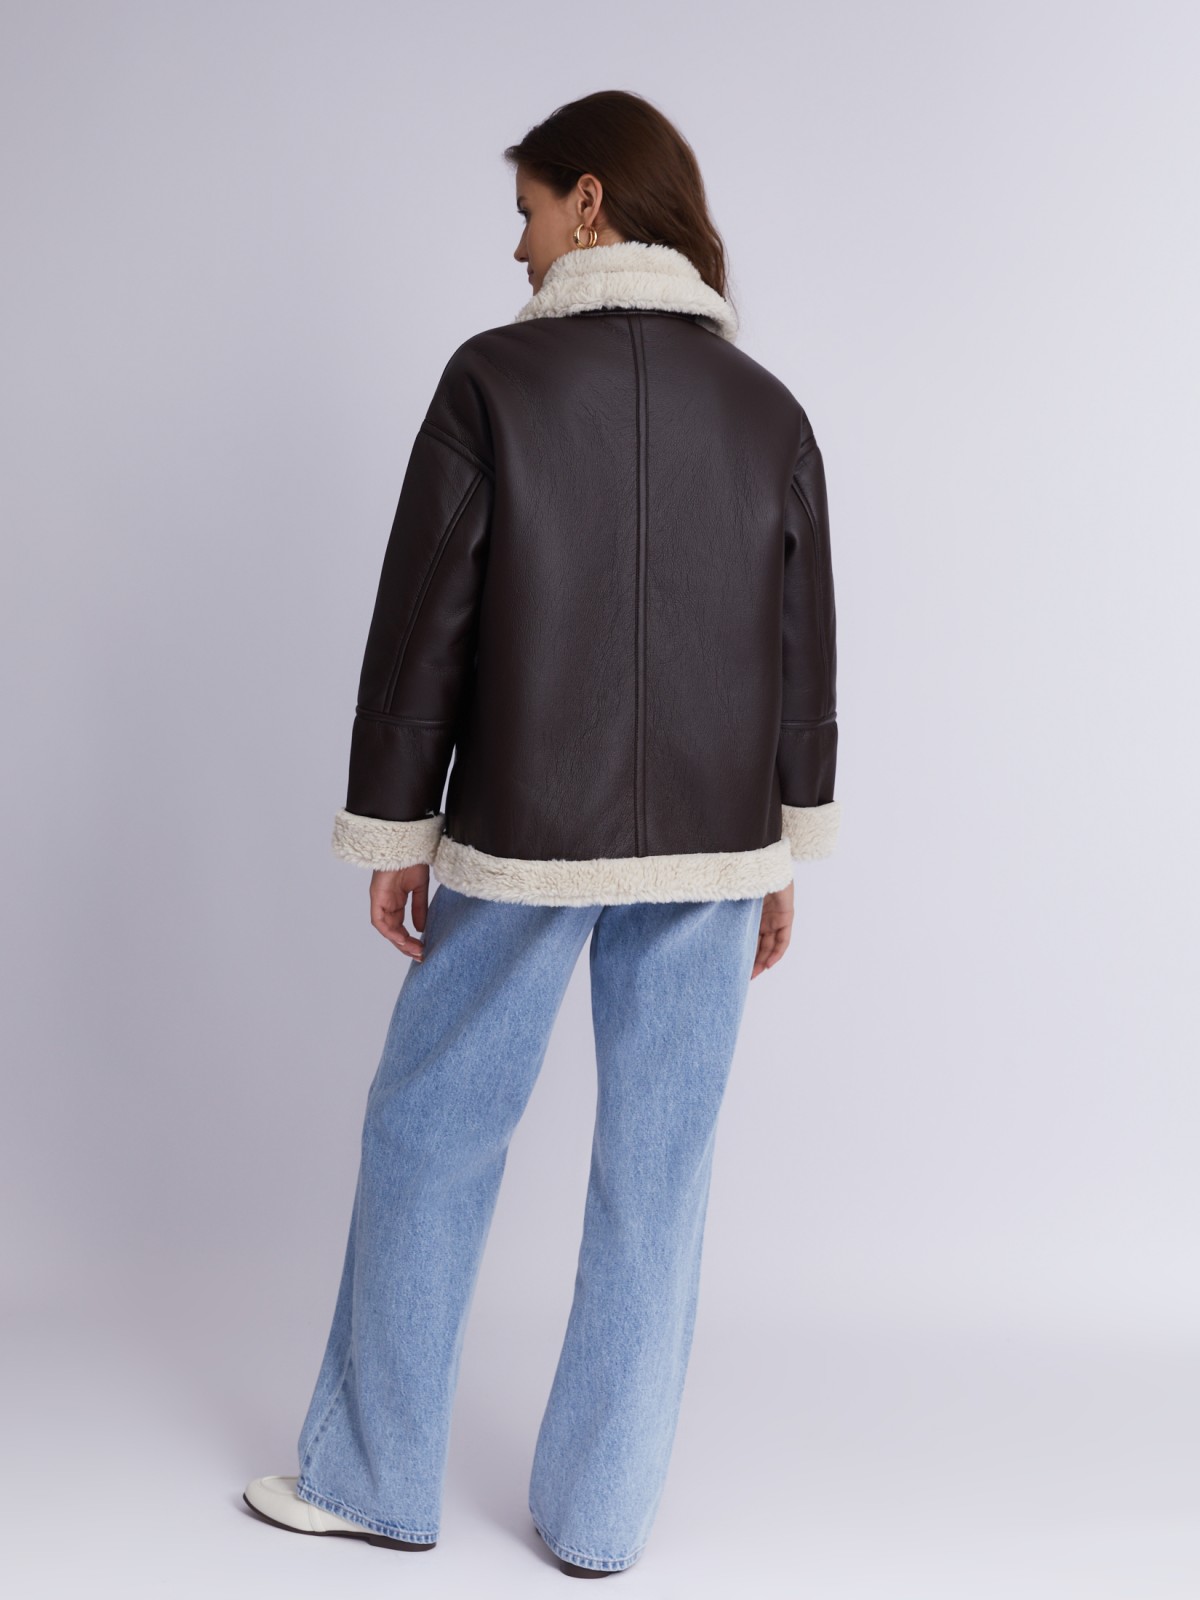 Тёплая куртка-дублёнка из экокожи с искусственным мехом по подкладке zolla 023335550124, цвет коричневый, размер XS - фото 6